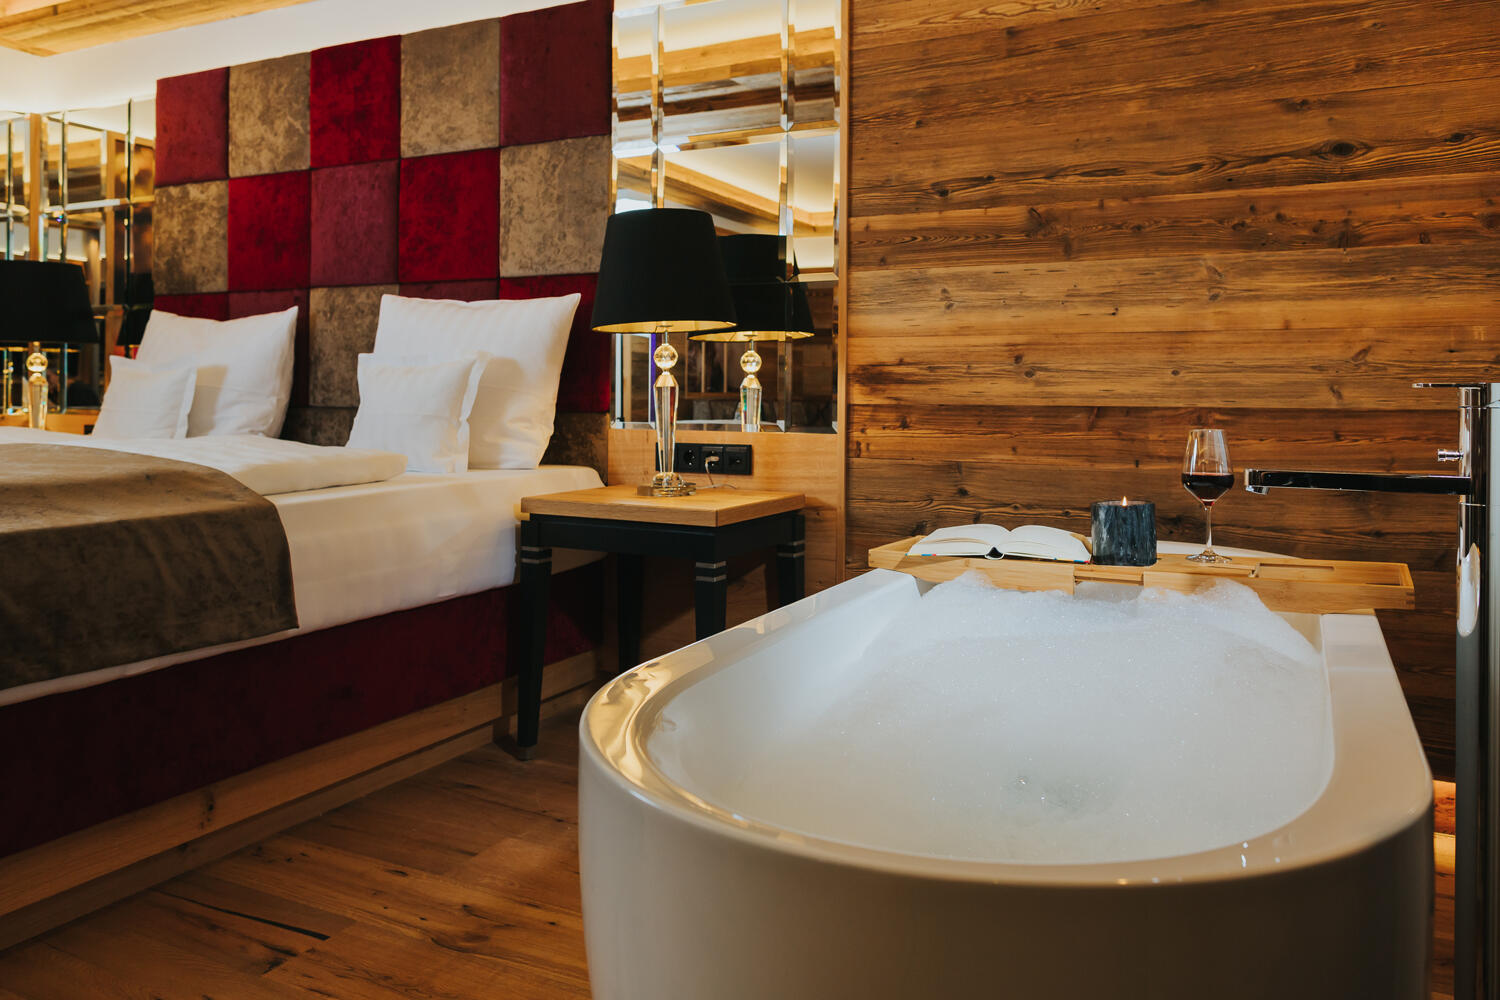 Hotelschlafzimmer aus Holz mit Badewanne direkt neben dem Bett